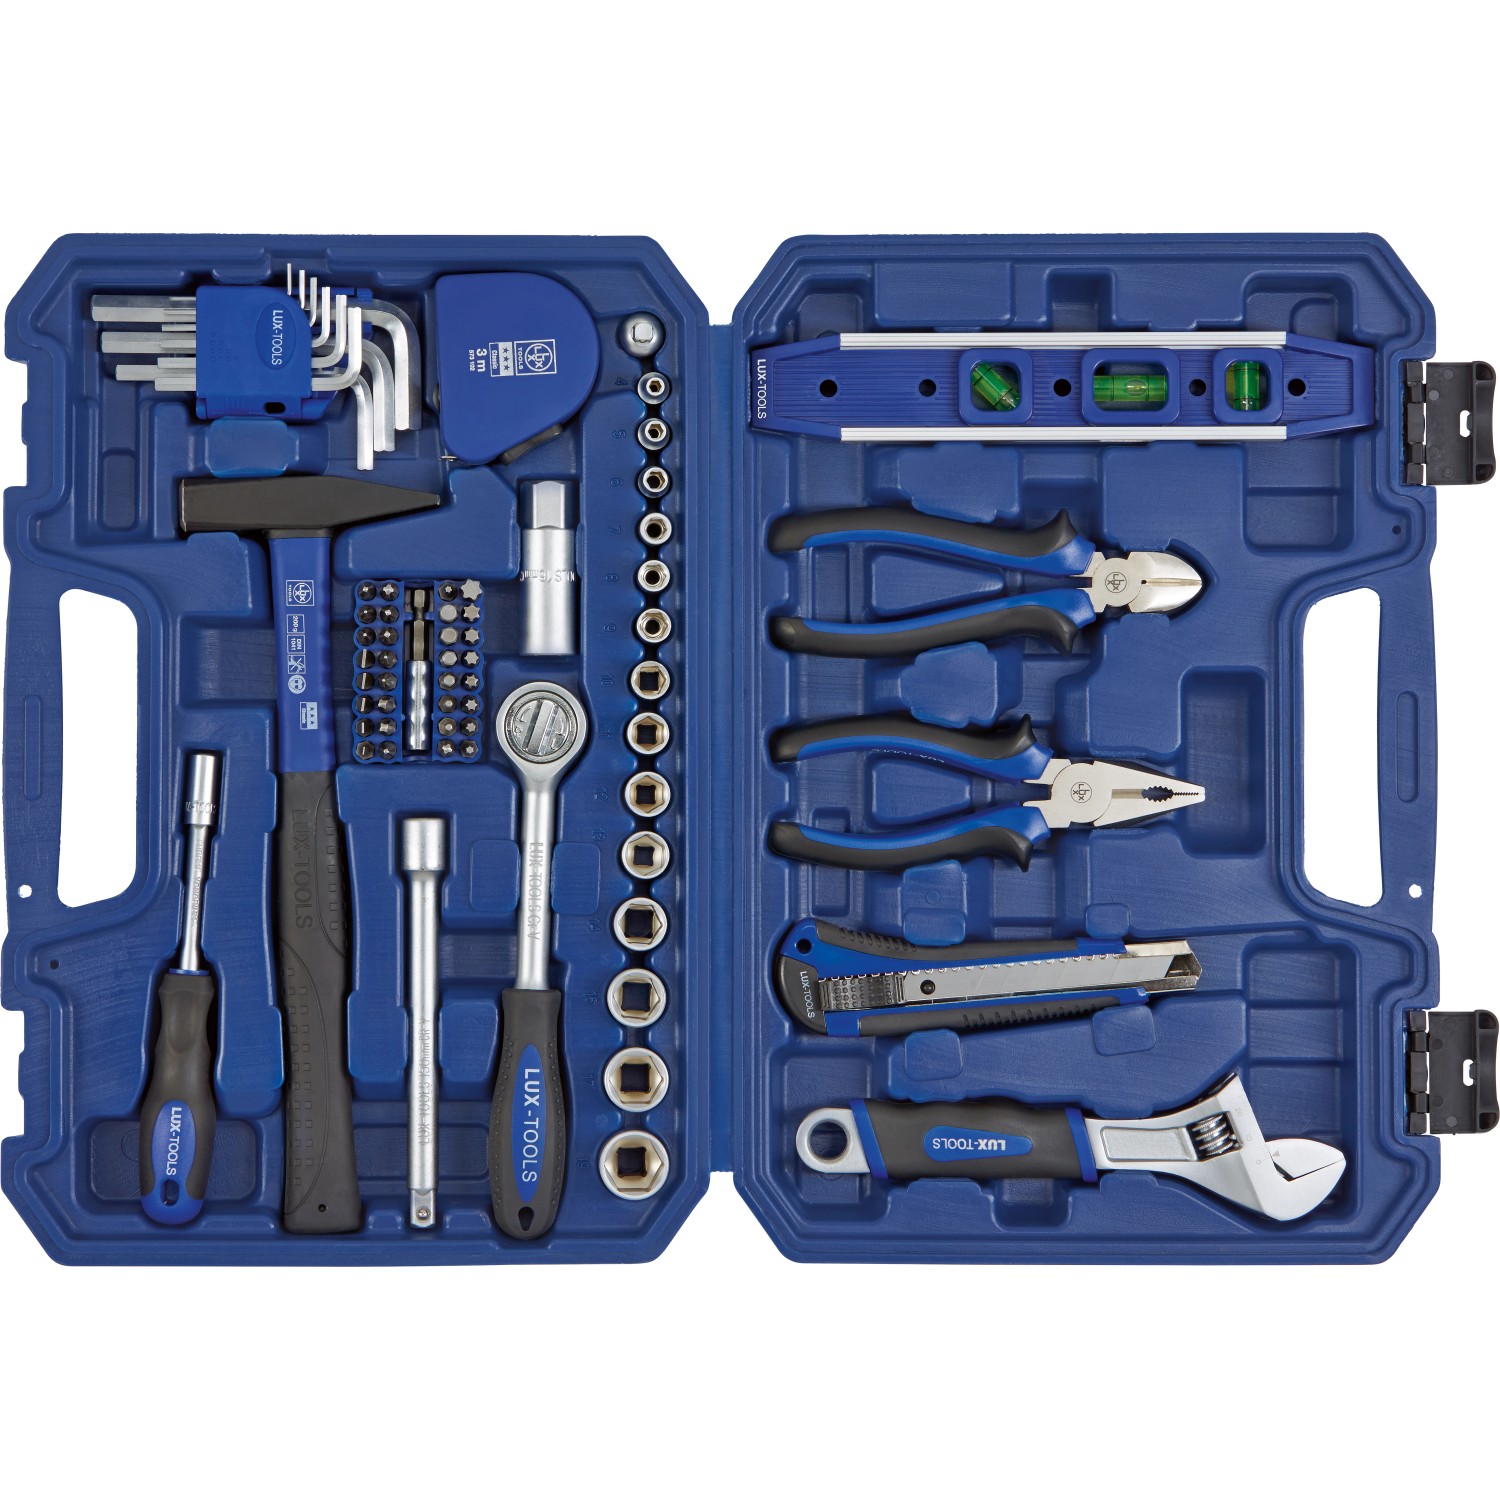 Hga tools. Lux Tools набор инструментов. Lux-Tools t 710. Lux Tools набор инструментов 54. Набор инструментов Lux-Tools Basic.